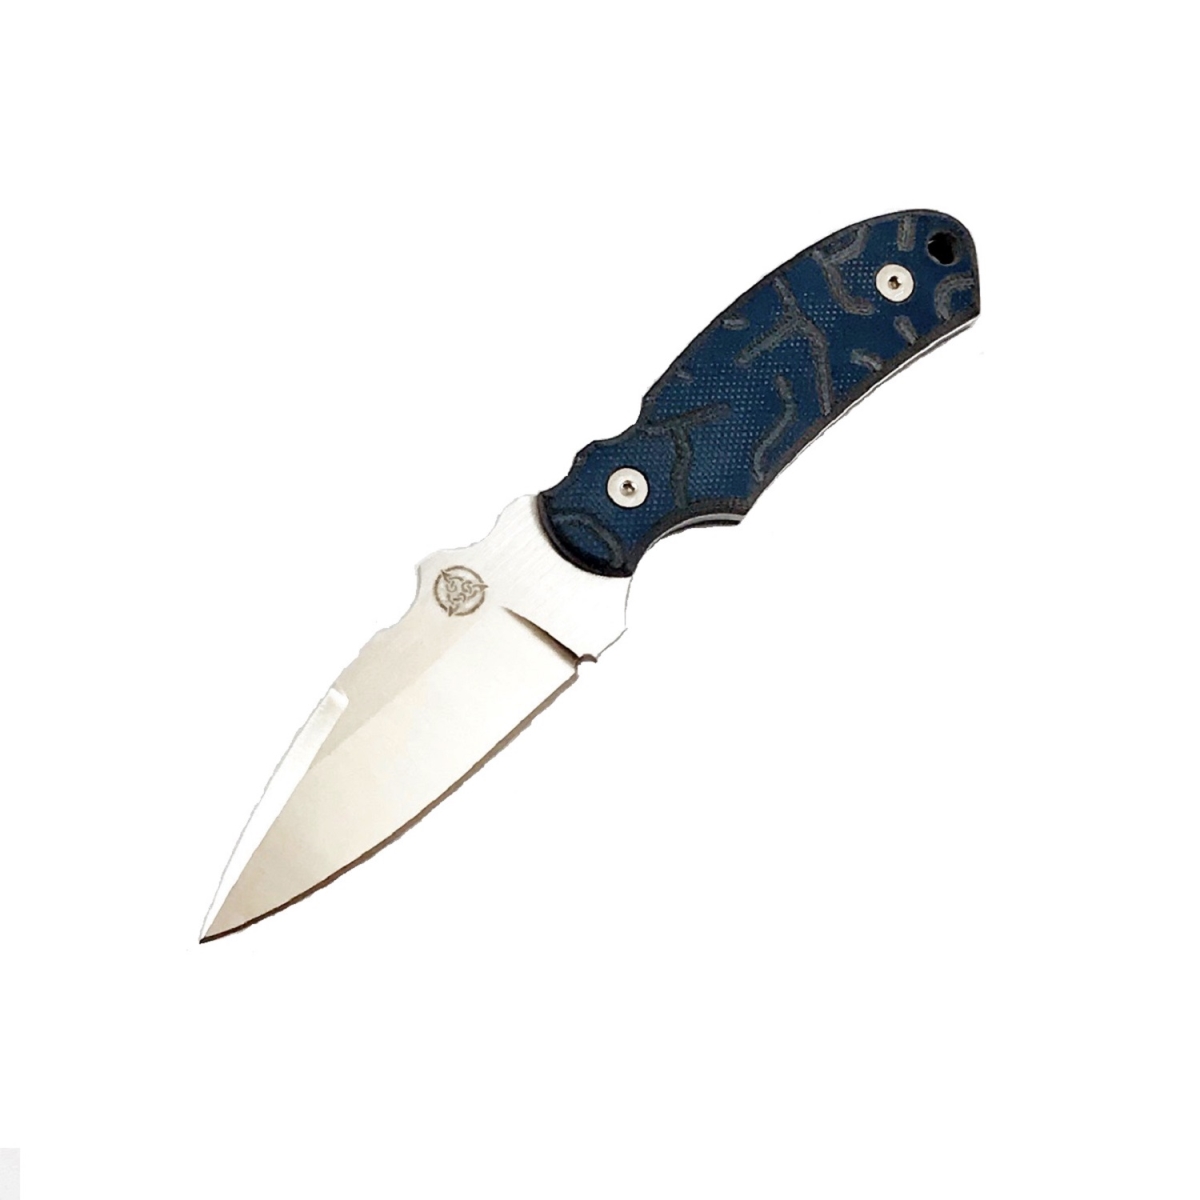 4015963 6 X 2.63 In. Arch Ally Fixed Knife Blade, Sheath Blue & Black